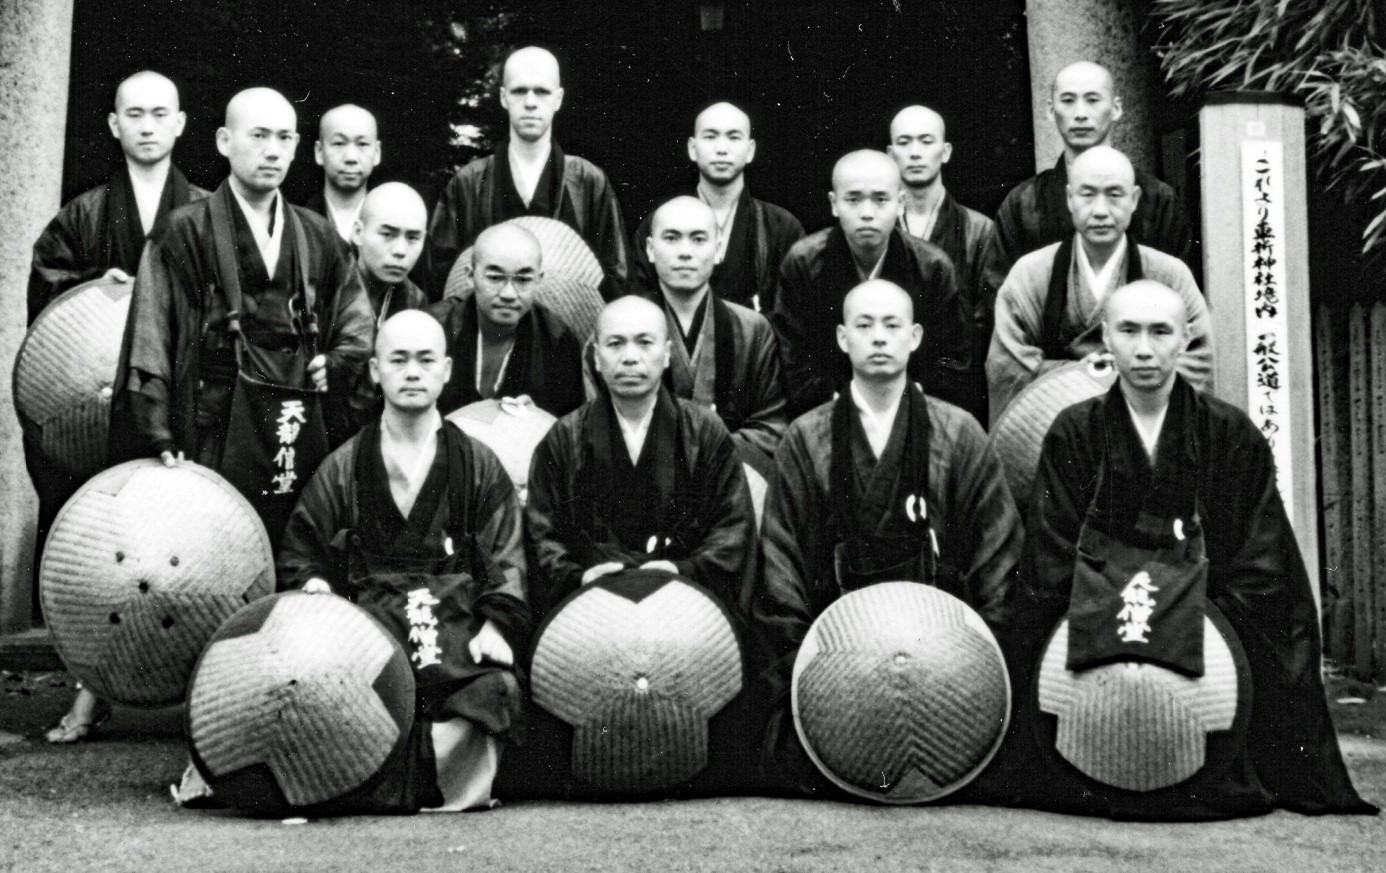 16 zenmonniken poseren op een groepsfoto tijdens een bedeltocht in Kyoto in 1987, allen hebben een ronde strohoed, achteraan staat Rients, die uitsteekt boven de anderen, omdat hij nu eenmaal langer is